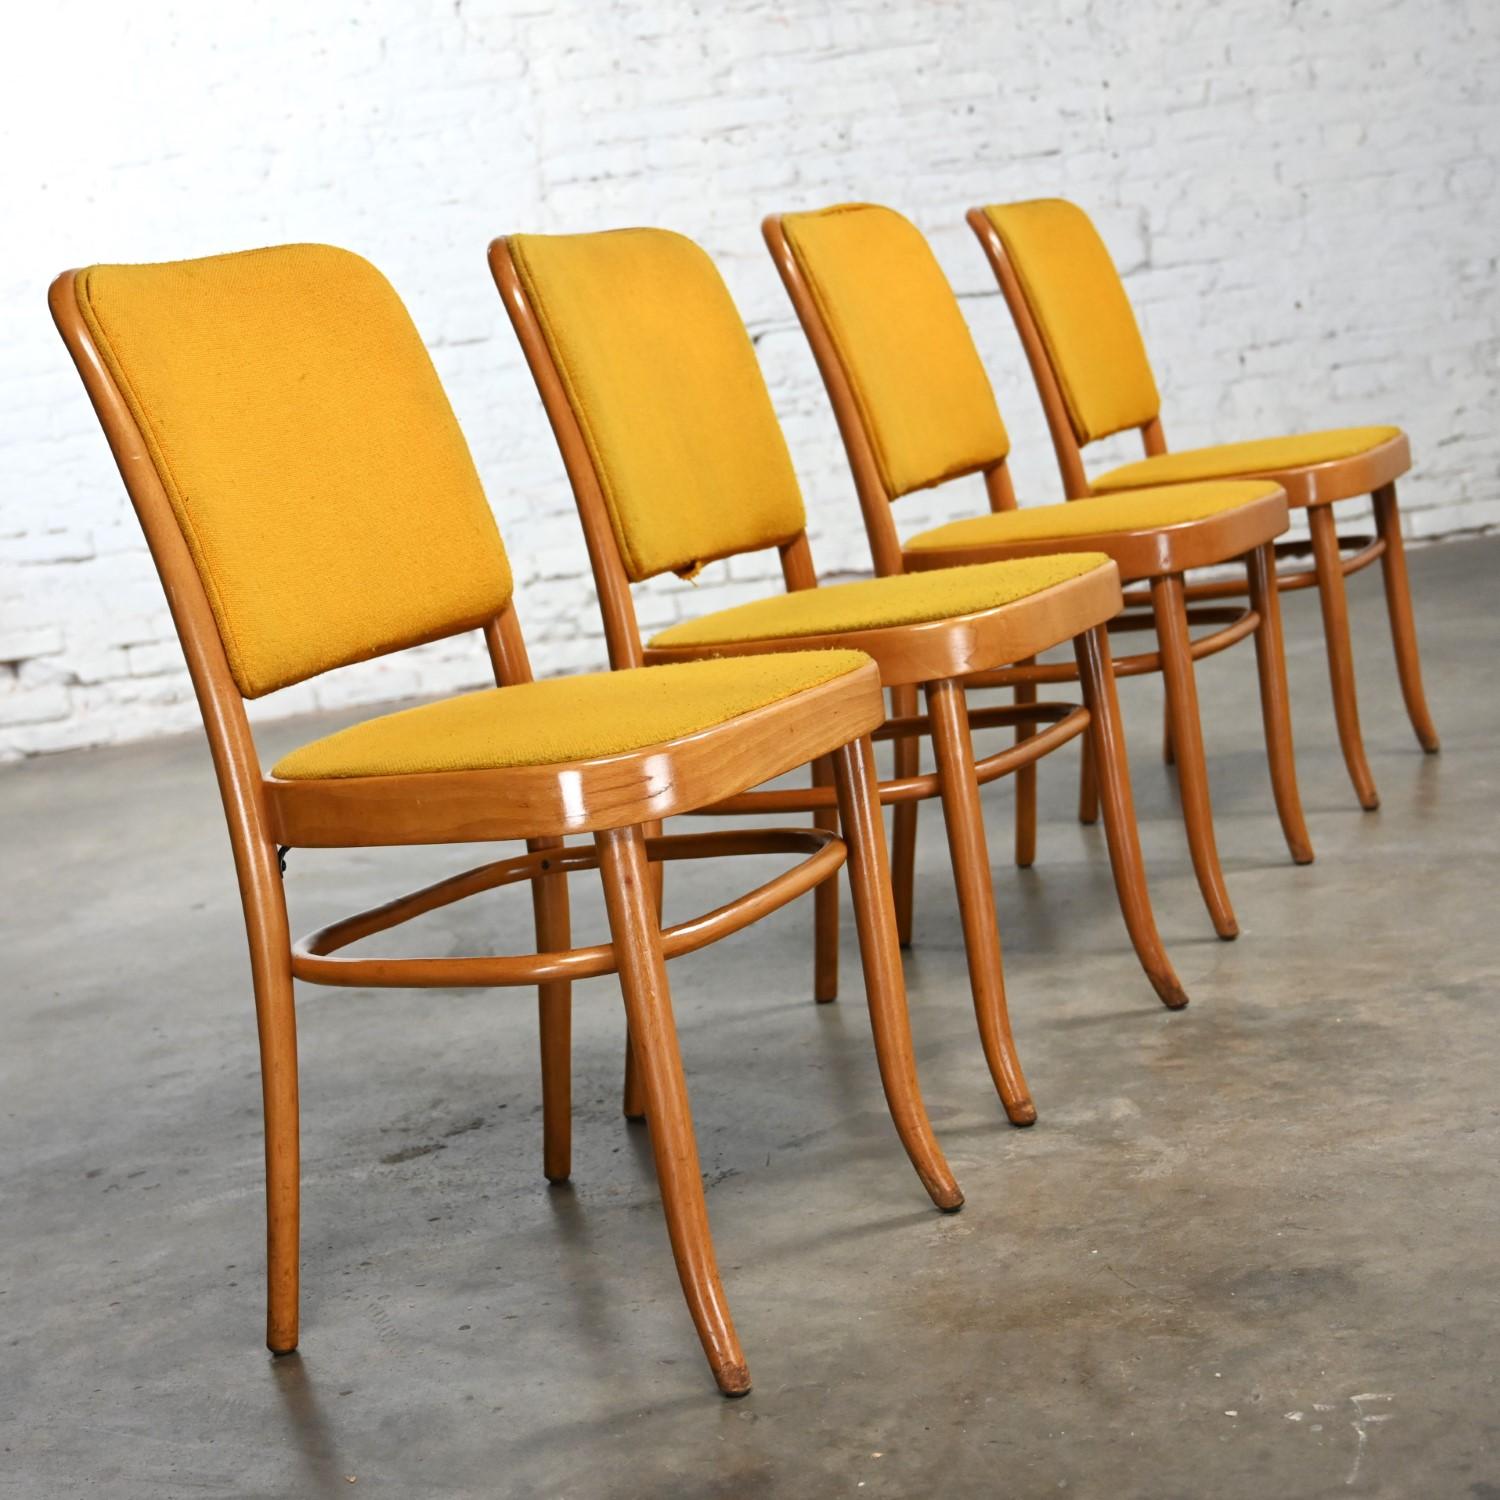 Merveilleuses chaises de salle à manger sans accoudoirs en hêtre courbé de style Thonet Josef Hoffman Prague 811 par Falcon Products Inc, ensemble de 4. Très bon état, en gardant à l'esprit qu'il s'agit de chaises vintage et non pas neuves et